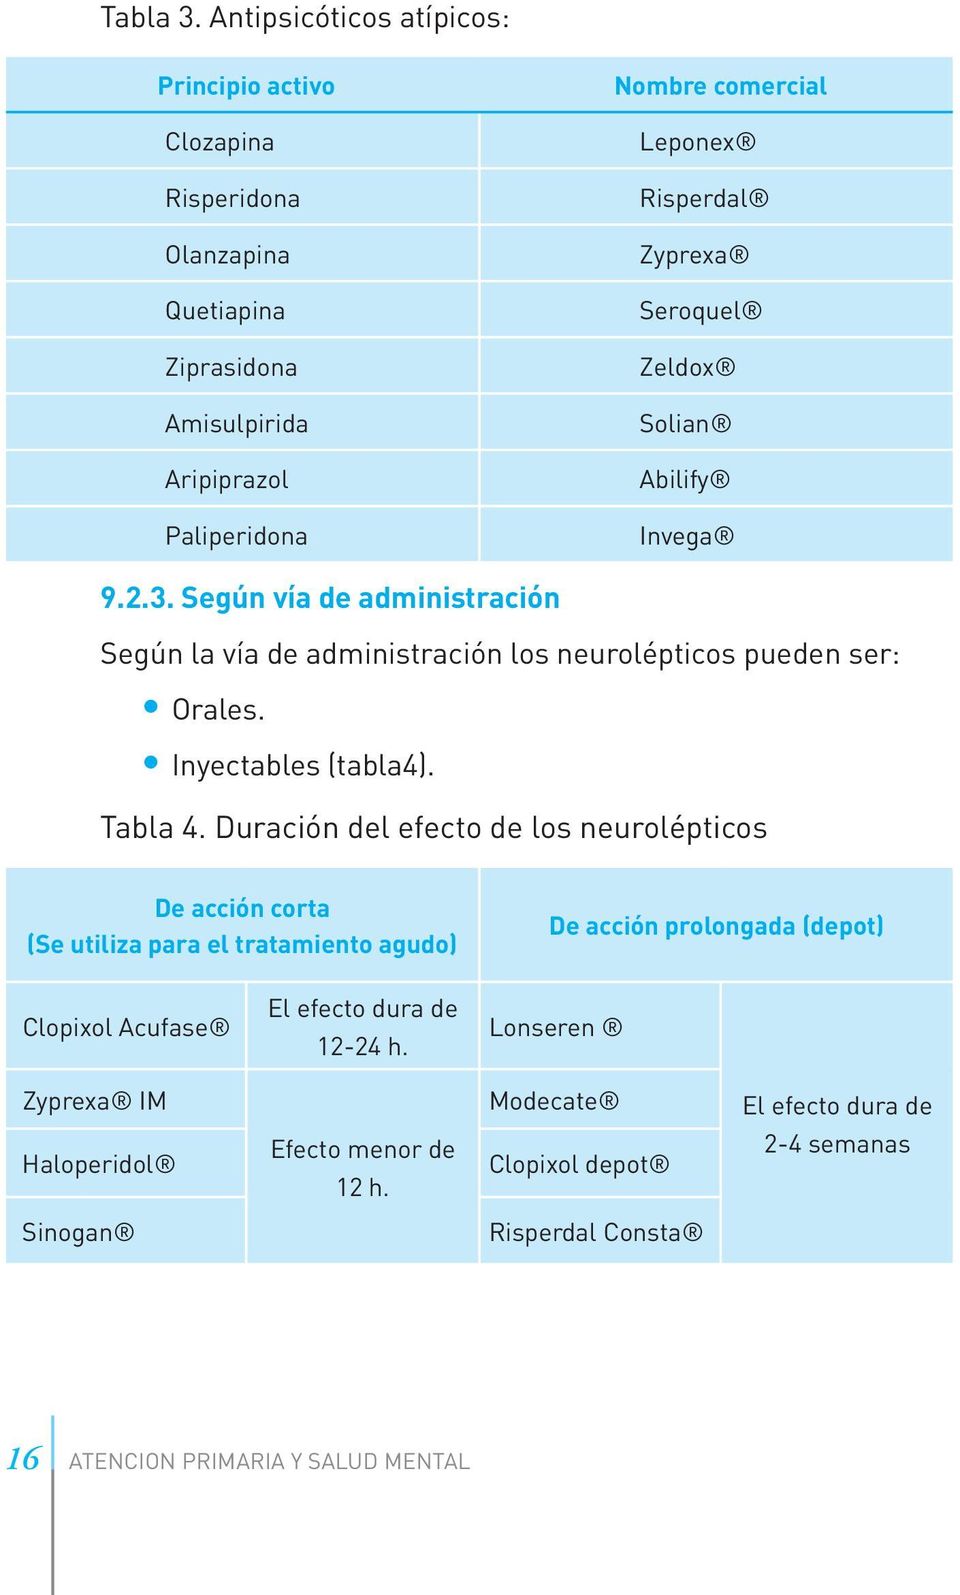 Zyprexa Seroquel Zeldox Solian Abilify Invega 9.2.3. Según vía de administración Según la vía de administración los neurolépticos pueden ser: Orales. Inyectables (tabla4).